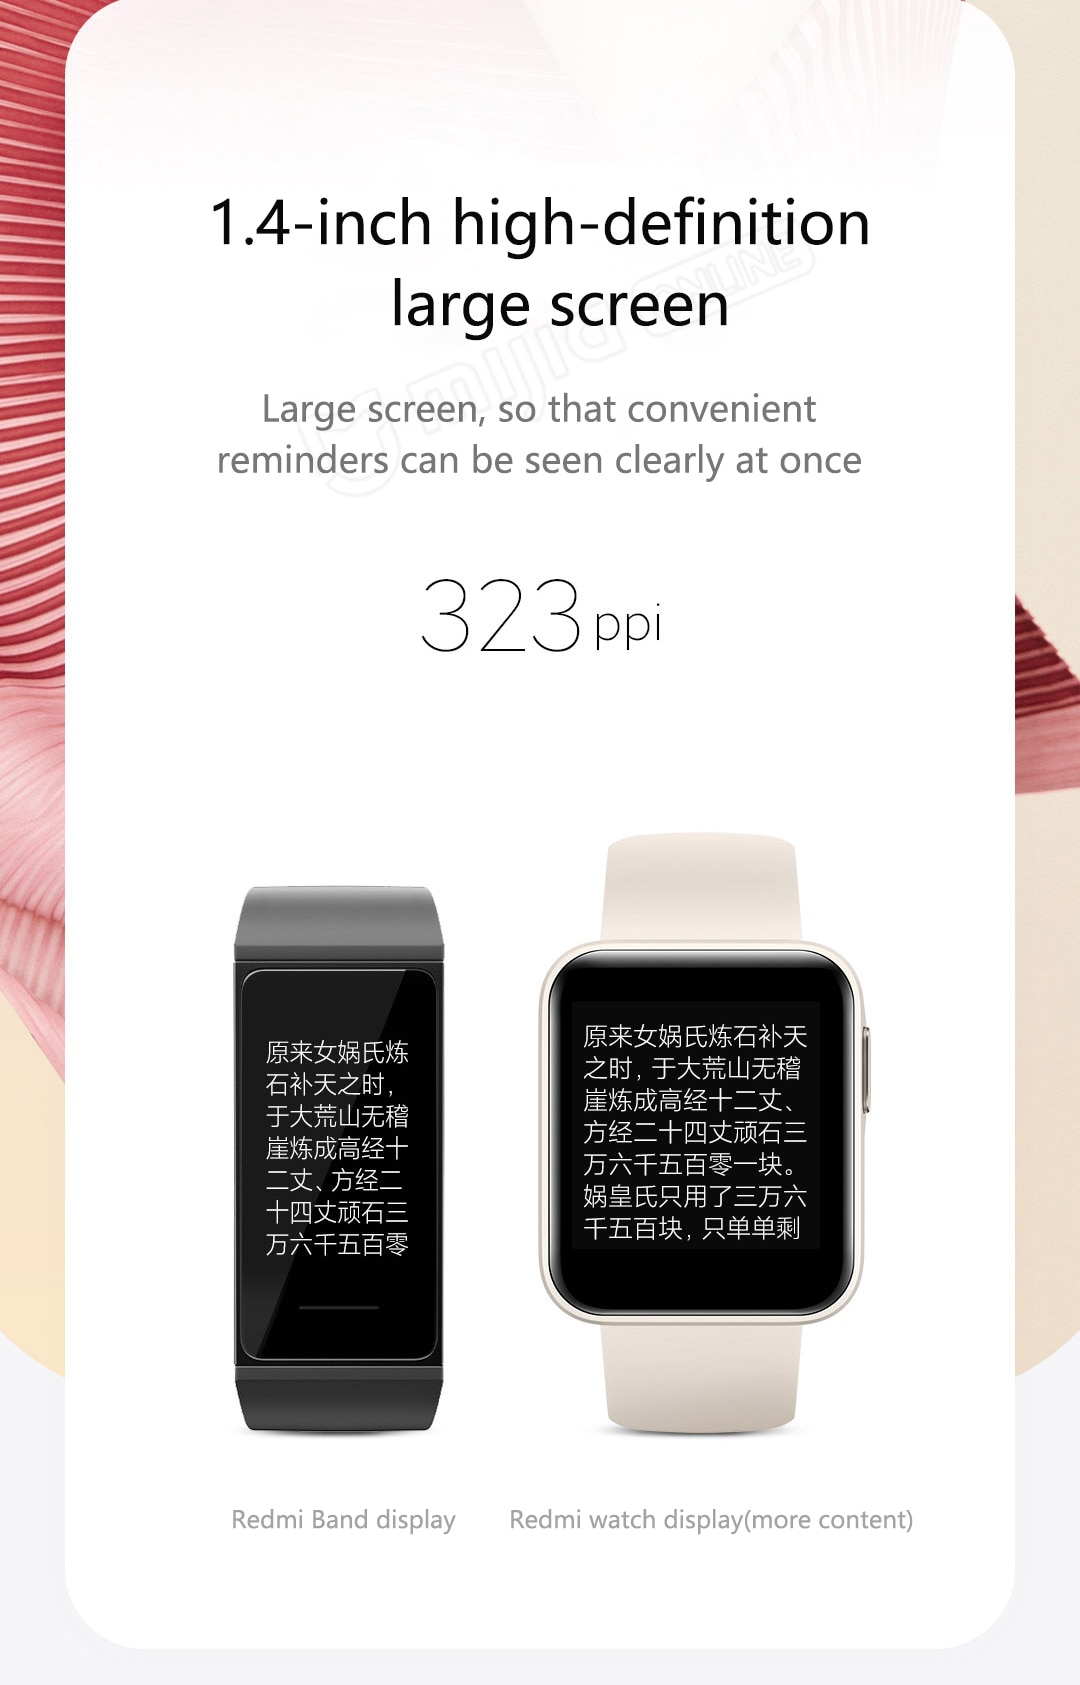 New Redmi Smartwatch Global